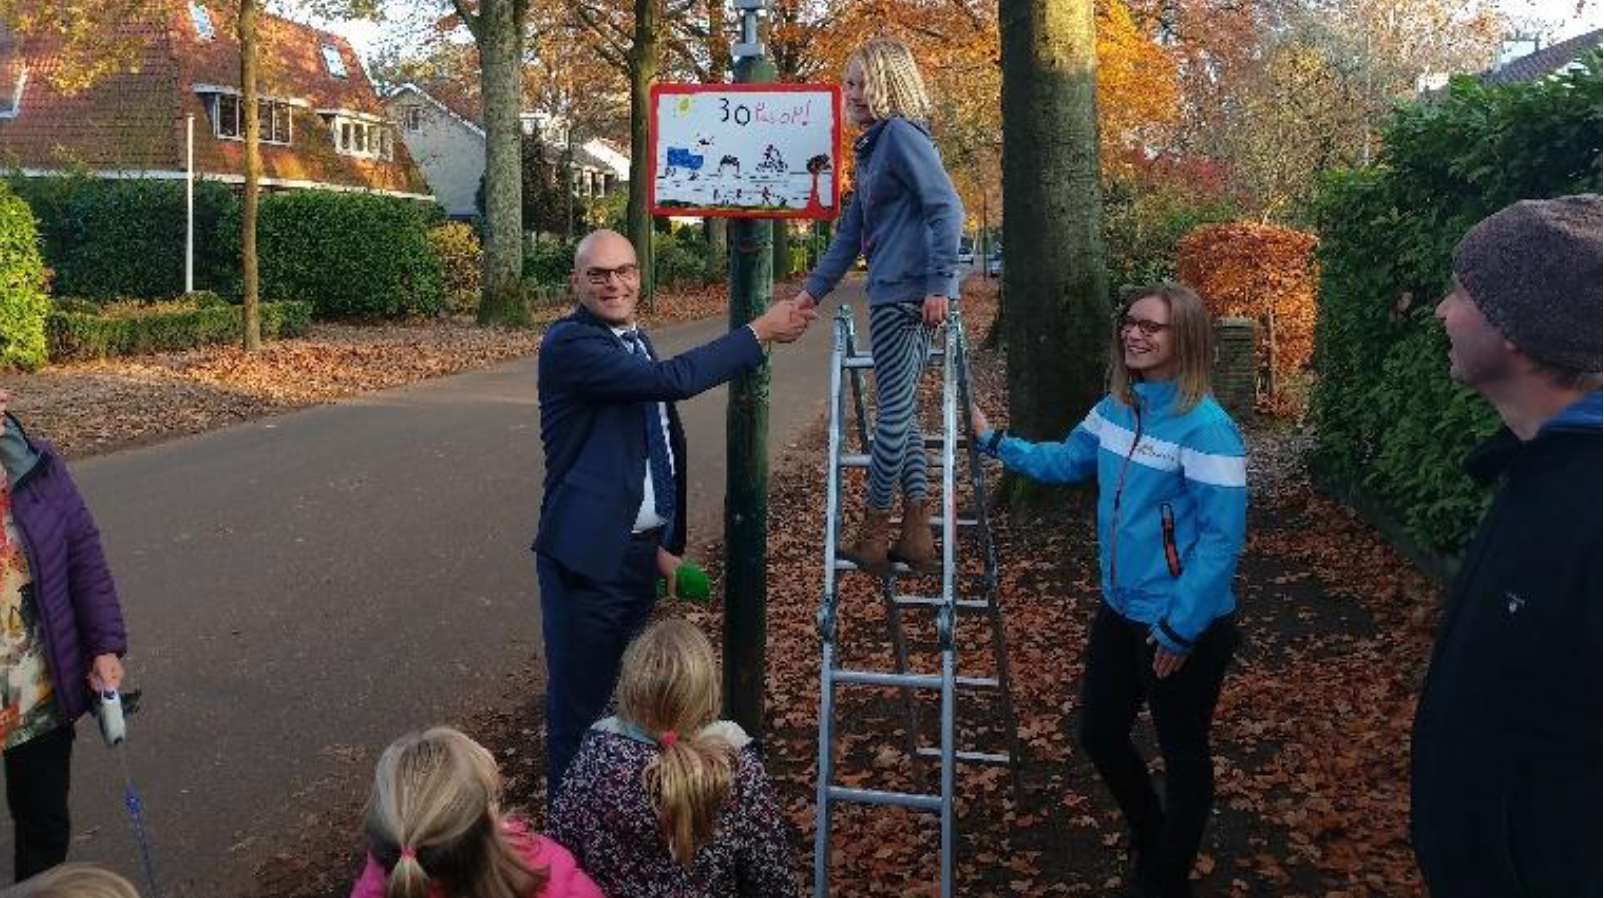 Onthulling bord in Driebergen met de wethouder n.a.v. een verkeersbordentekenwedstrijd